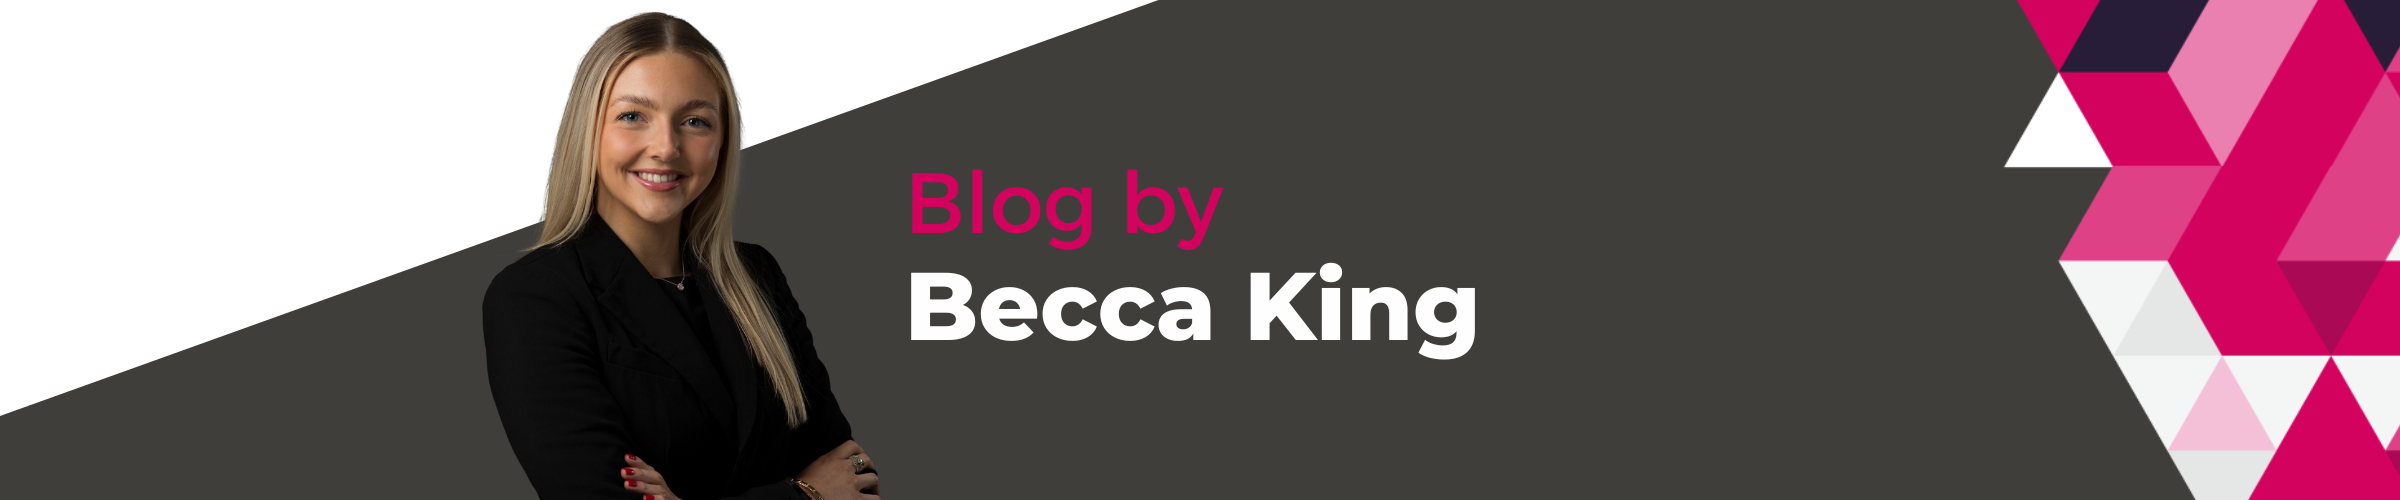 Becca King